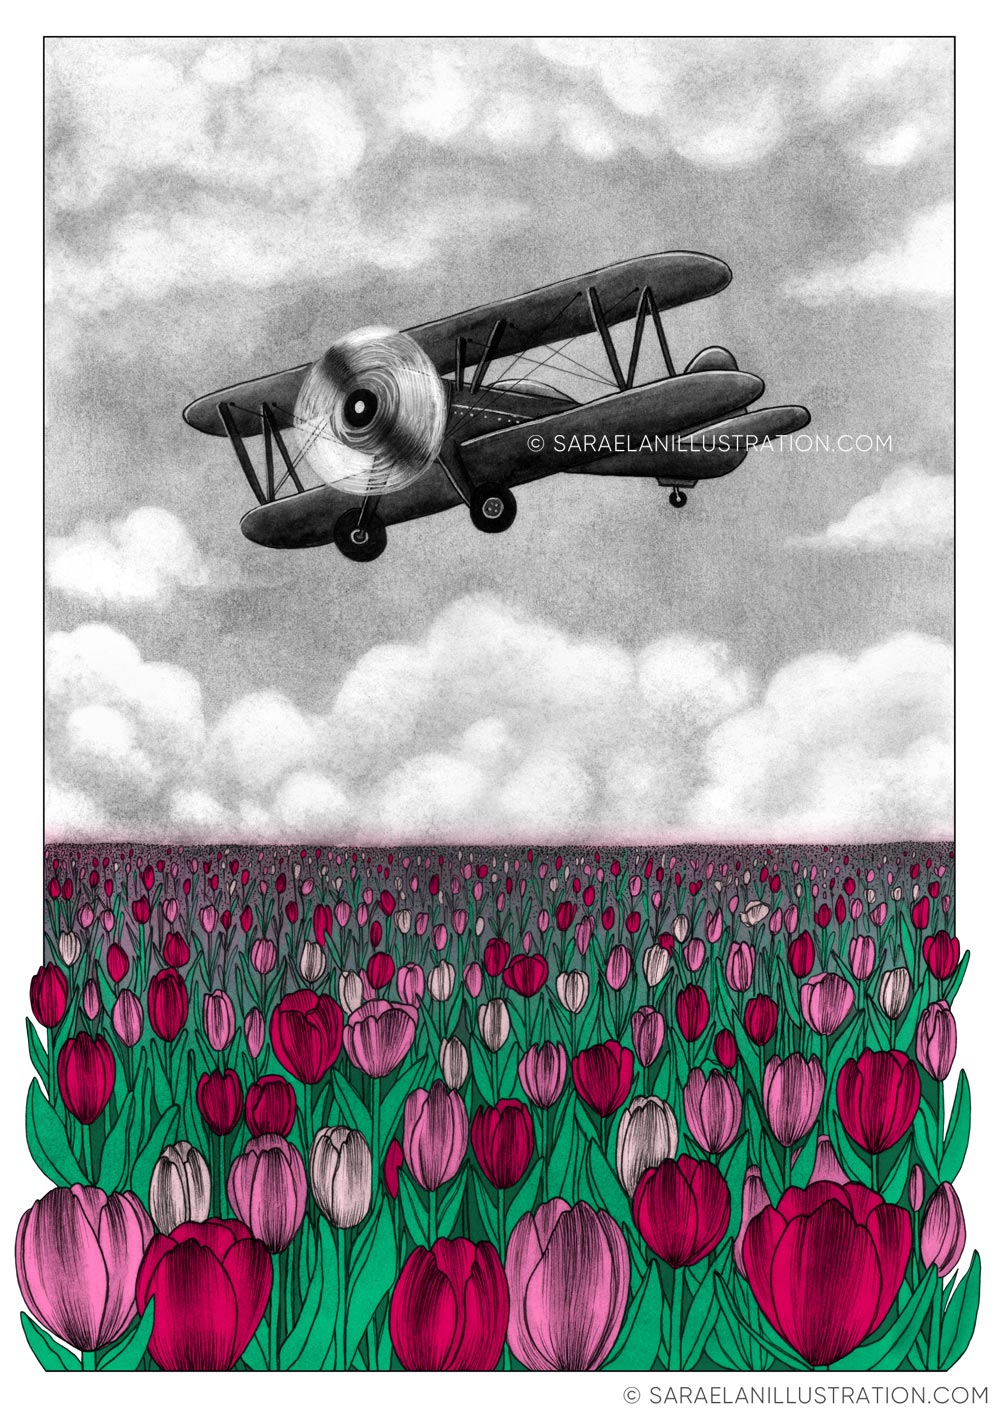 Deus ex Machina -illustrazioni di paesaggi naturali con mezzi di trasporto dei primi del 900 - aereo in volo su campo di tulipani rosa